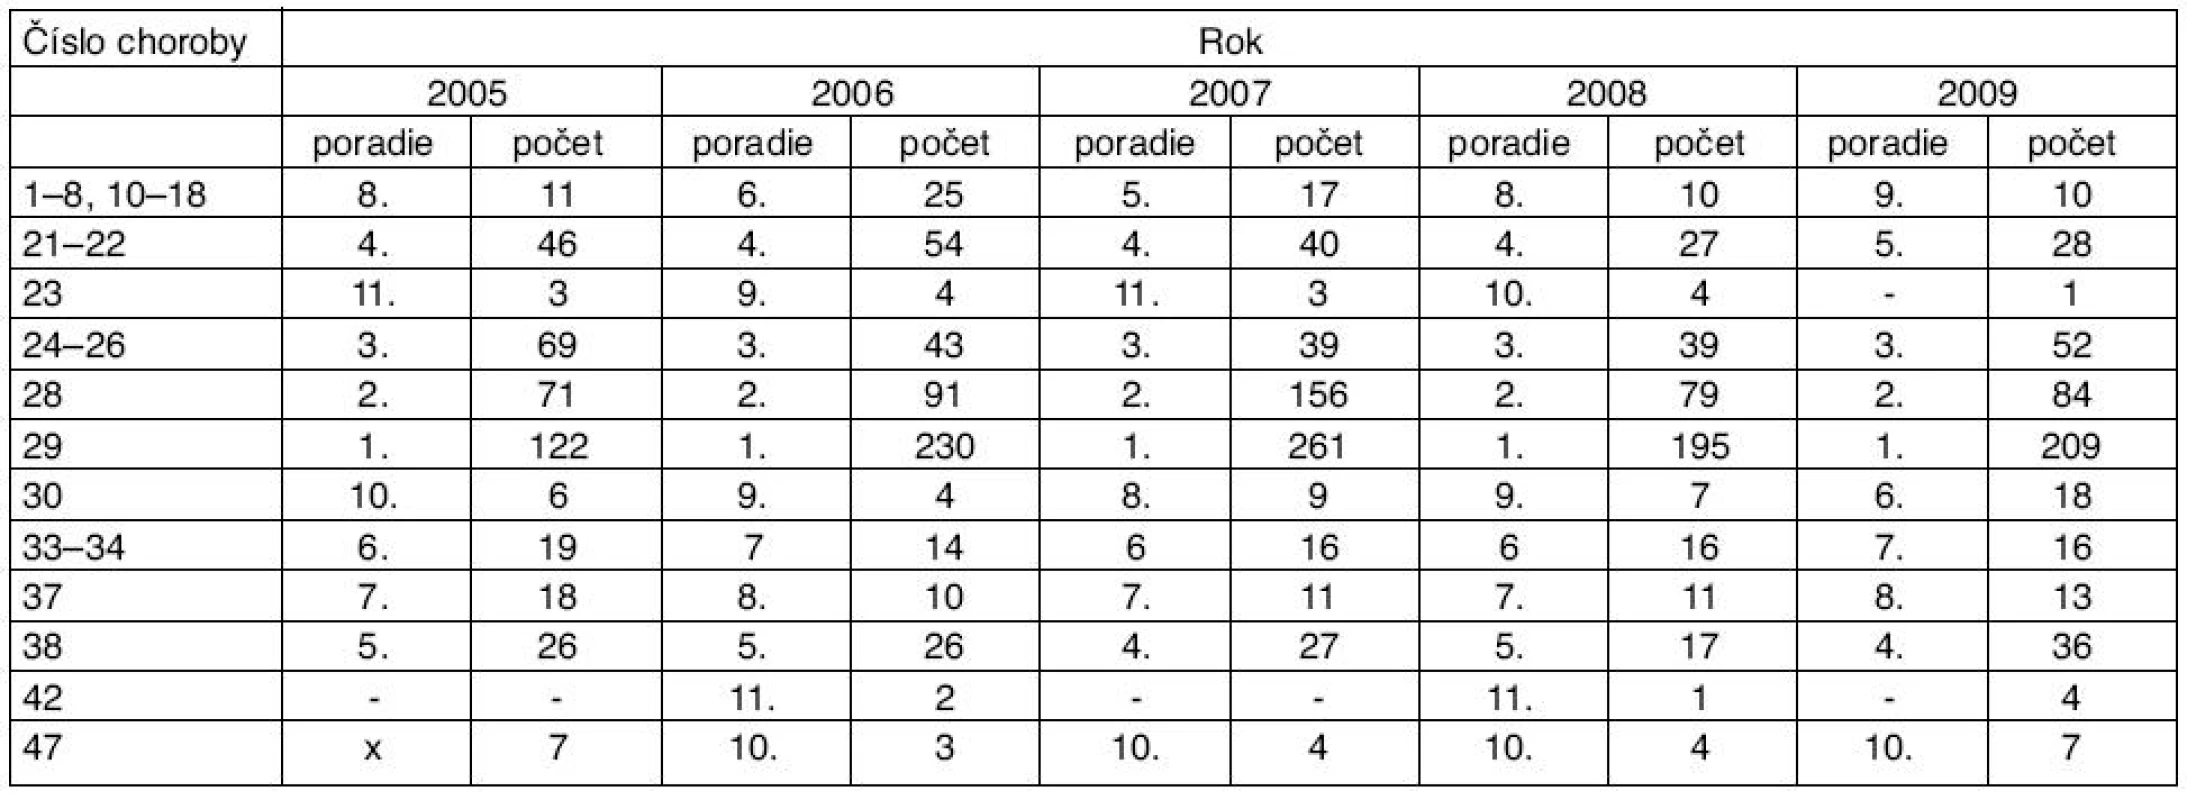 Poradie najčastejšie hlásených chorôb z povolania v SR v rokoch 2005–2009